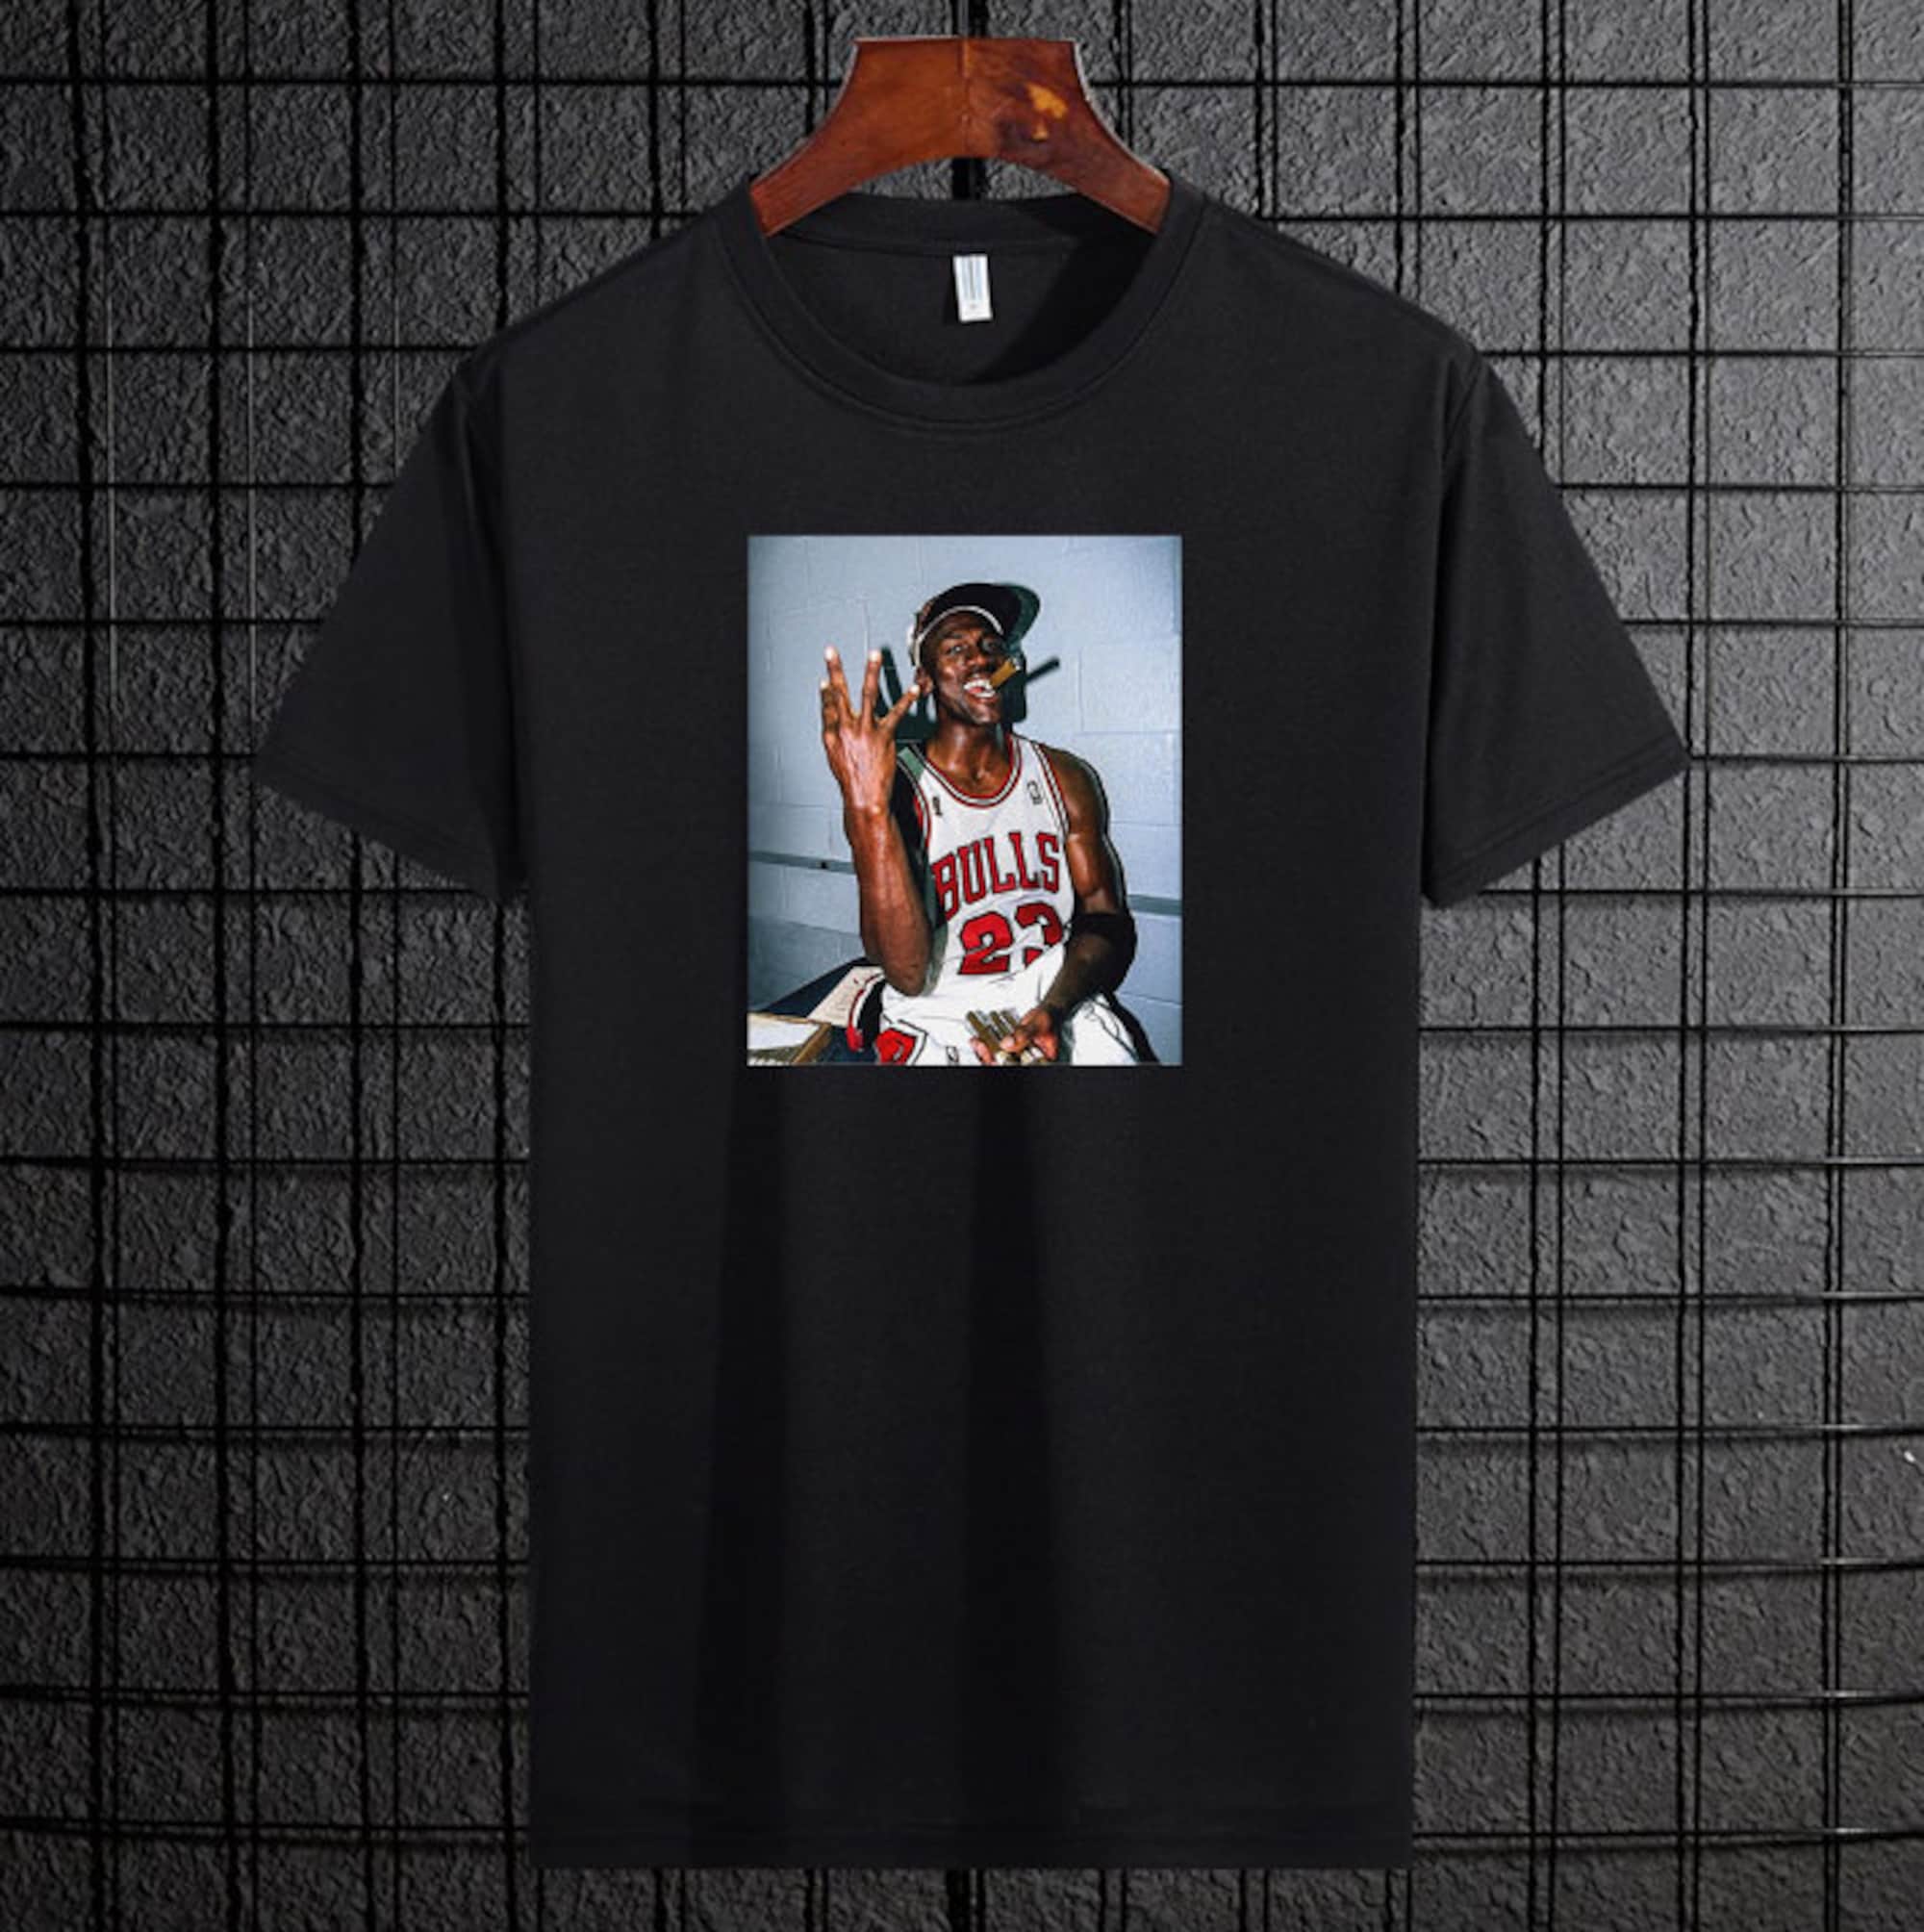 Discover Classic 90s Michael Jordan Kobe Bryant Basketball Tees